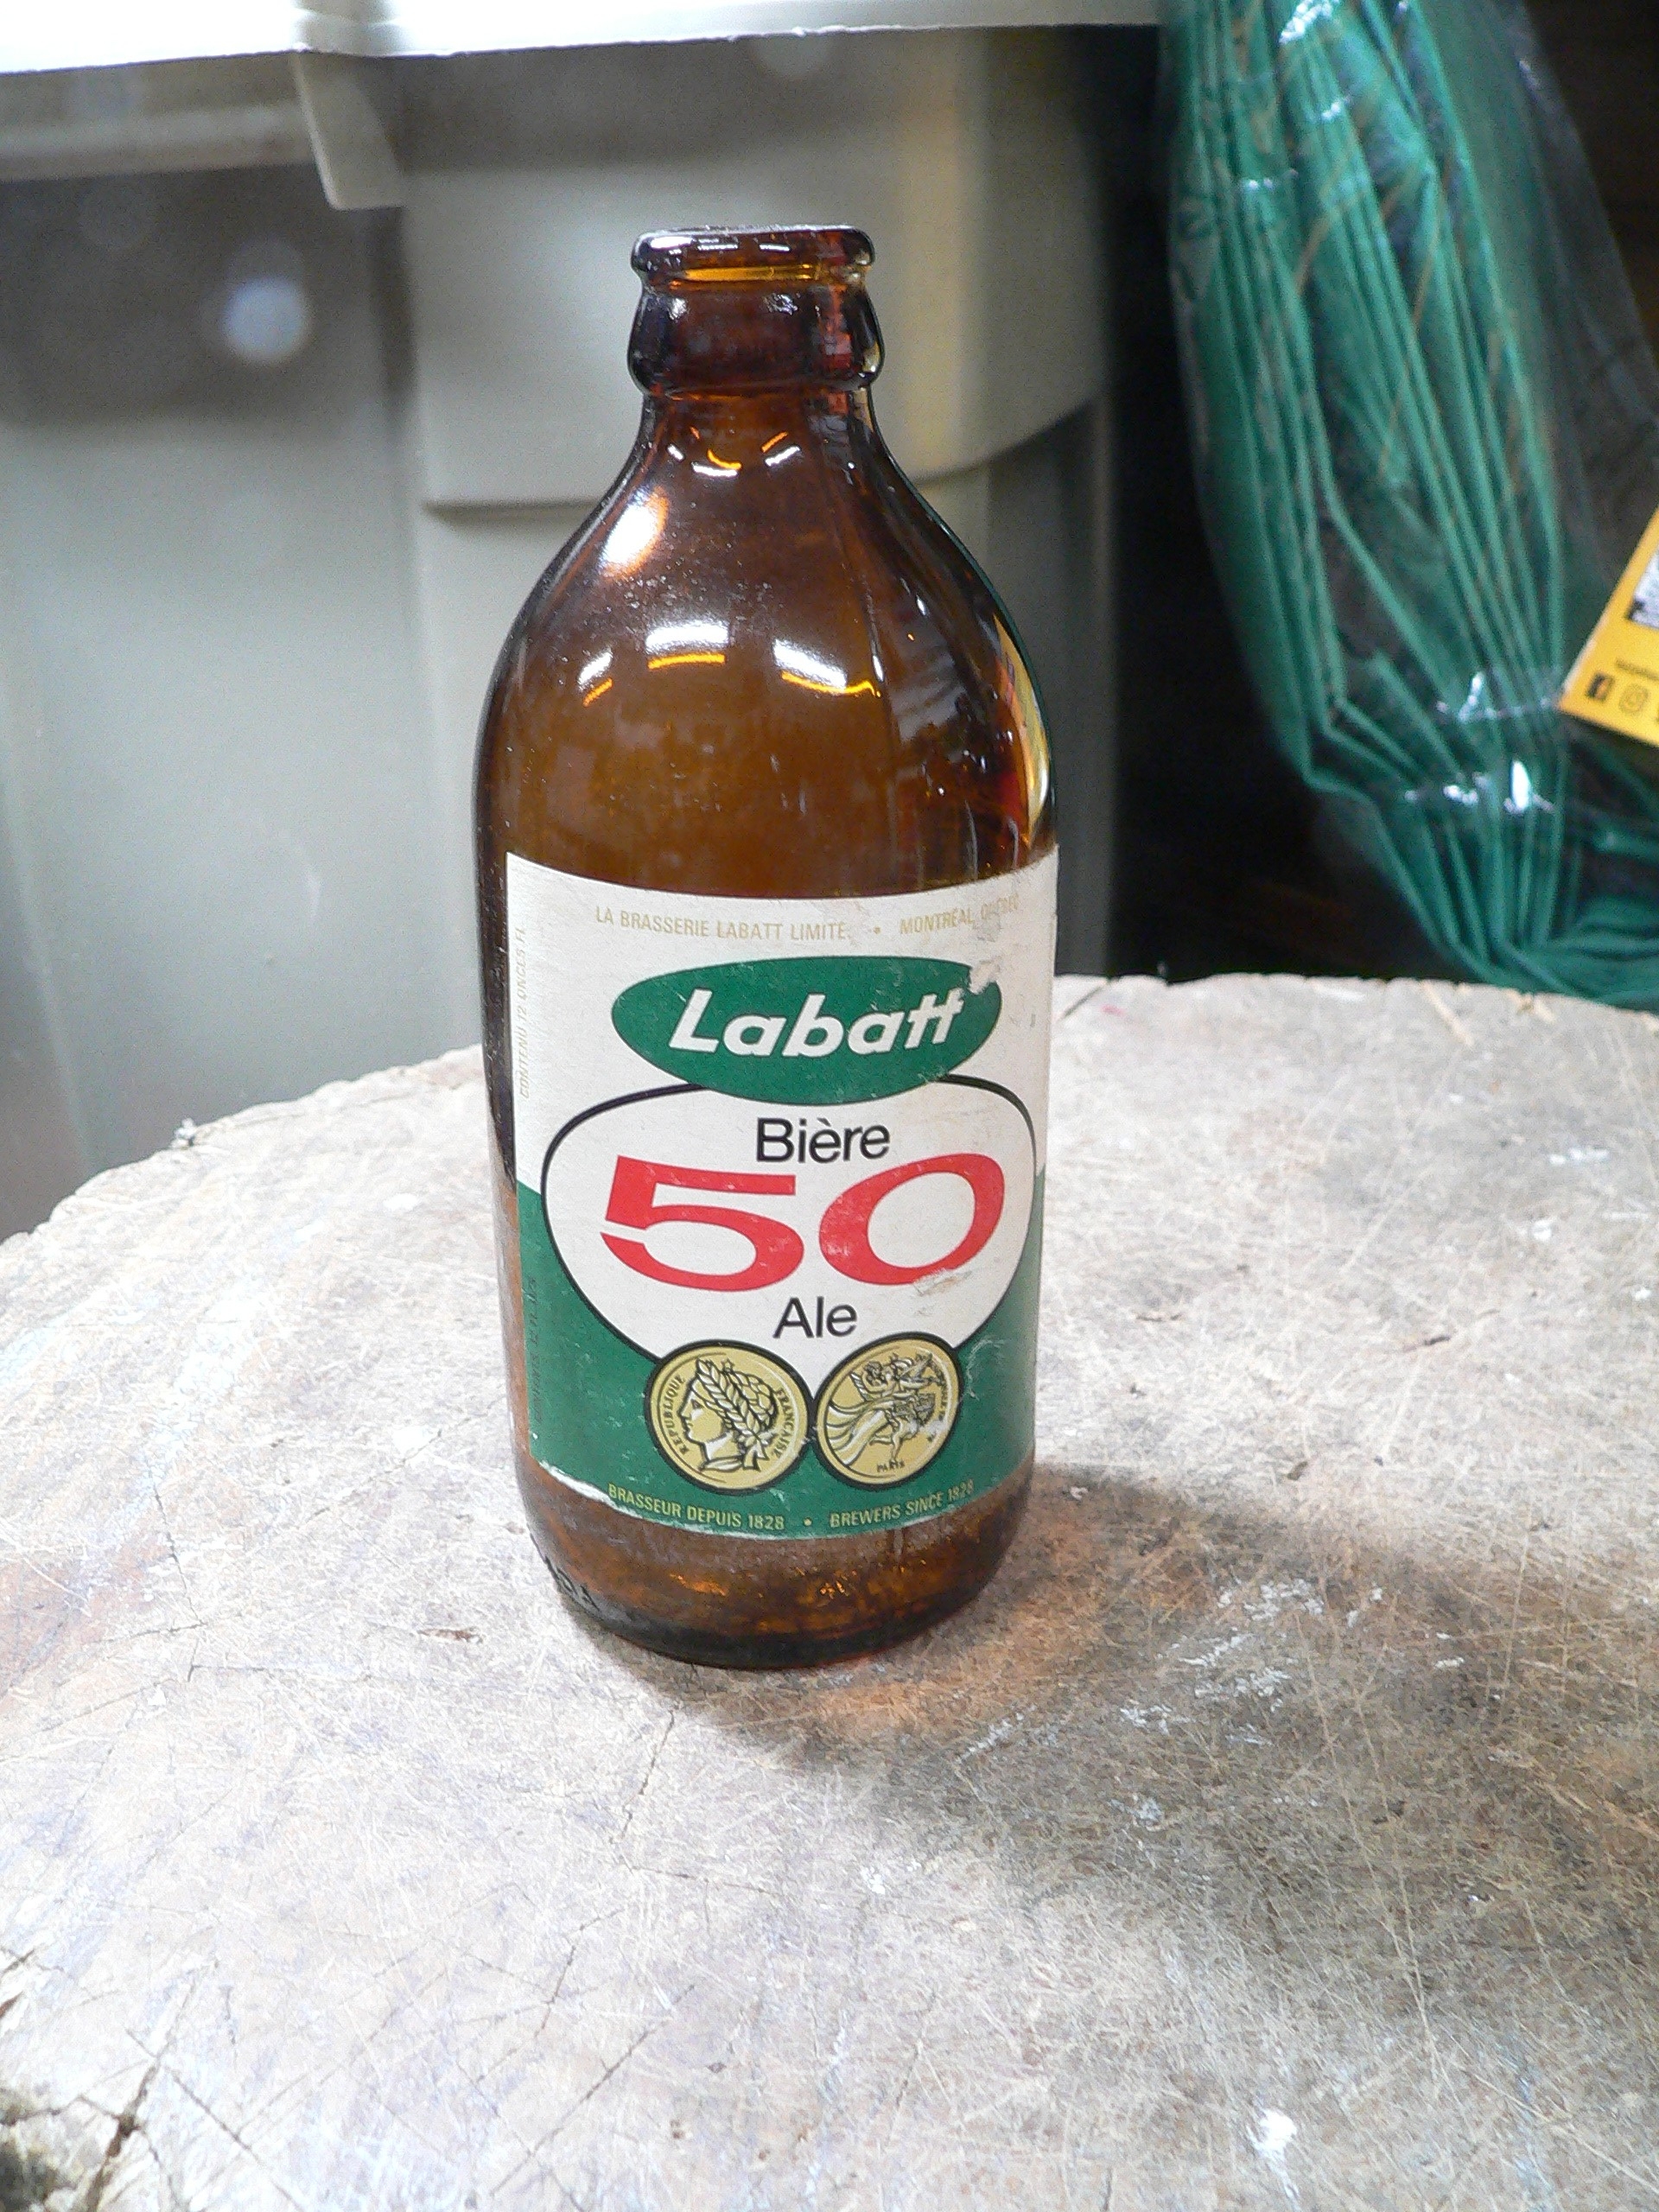 Bouteille bière Labatt 50 # 11694.4